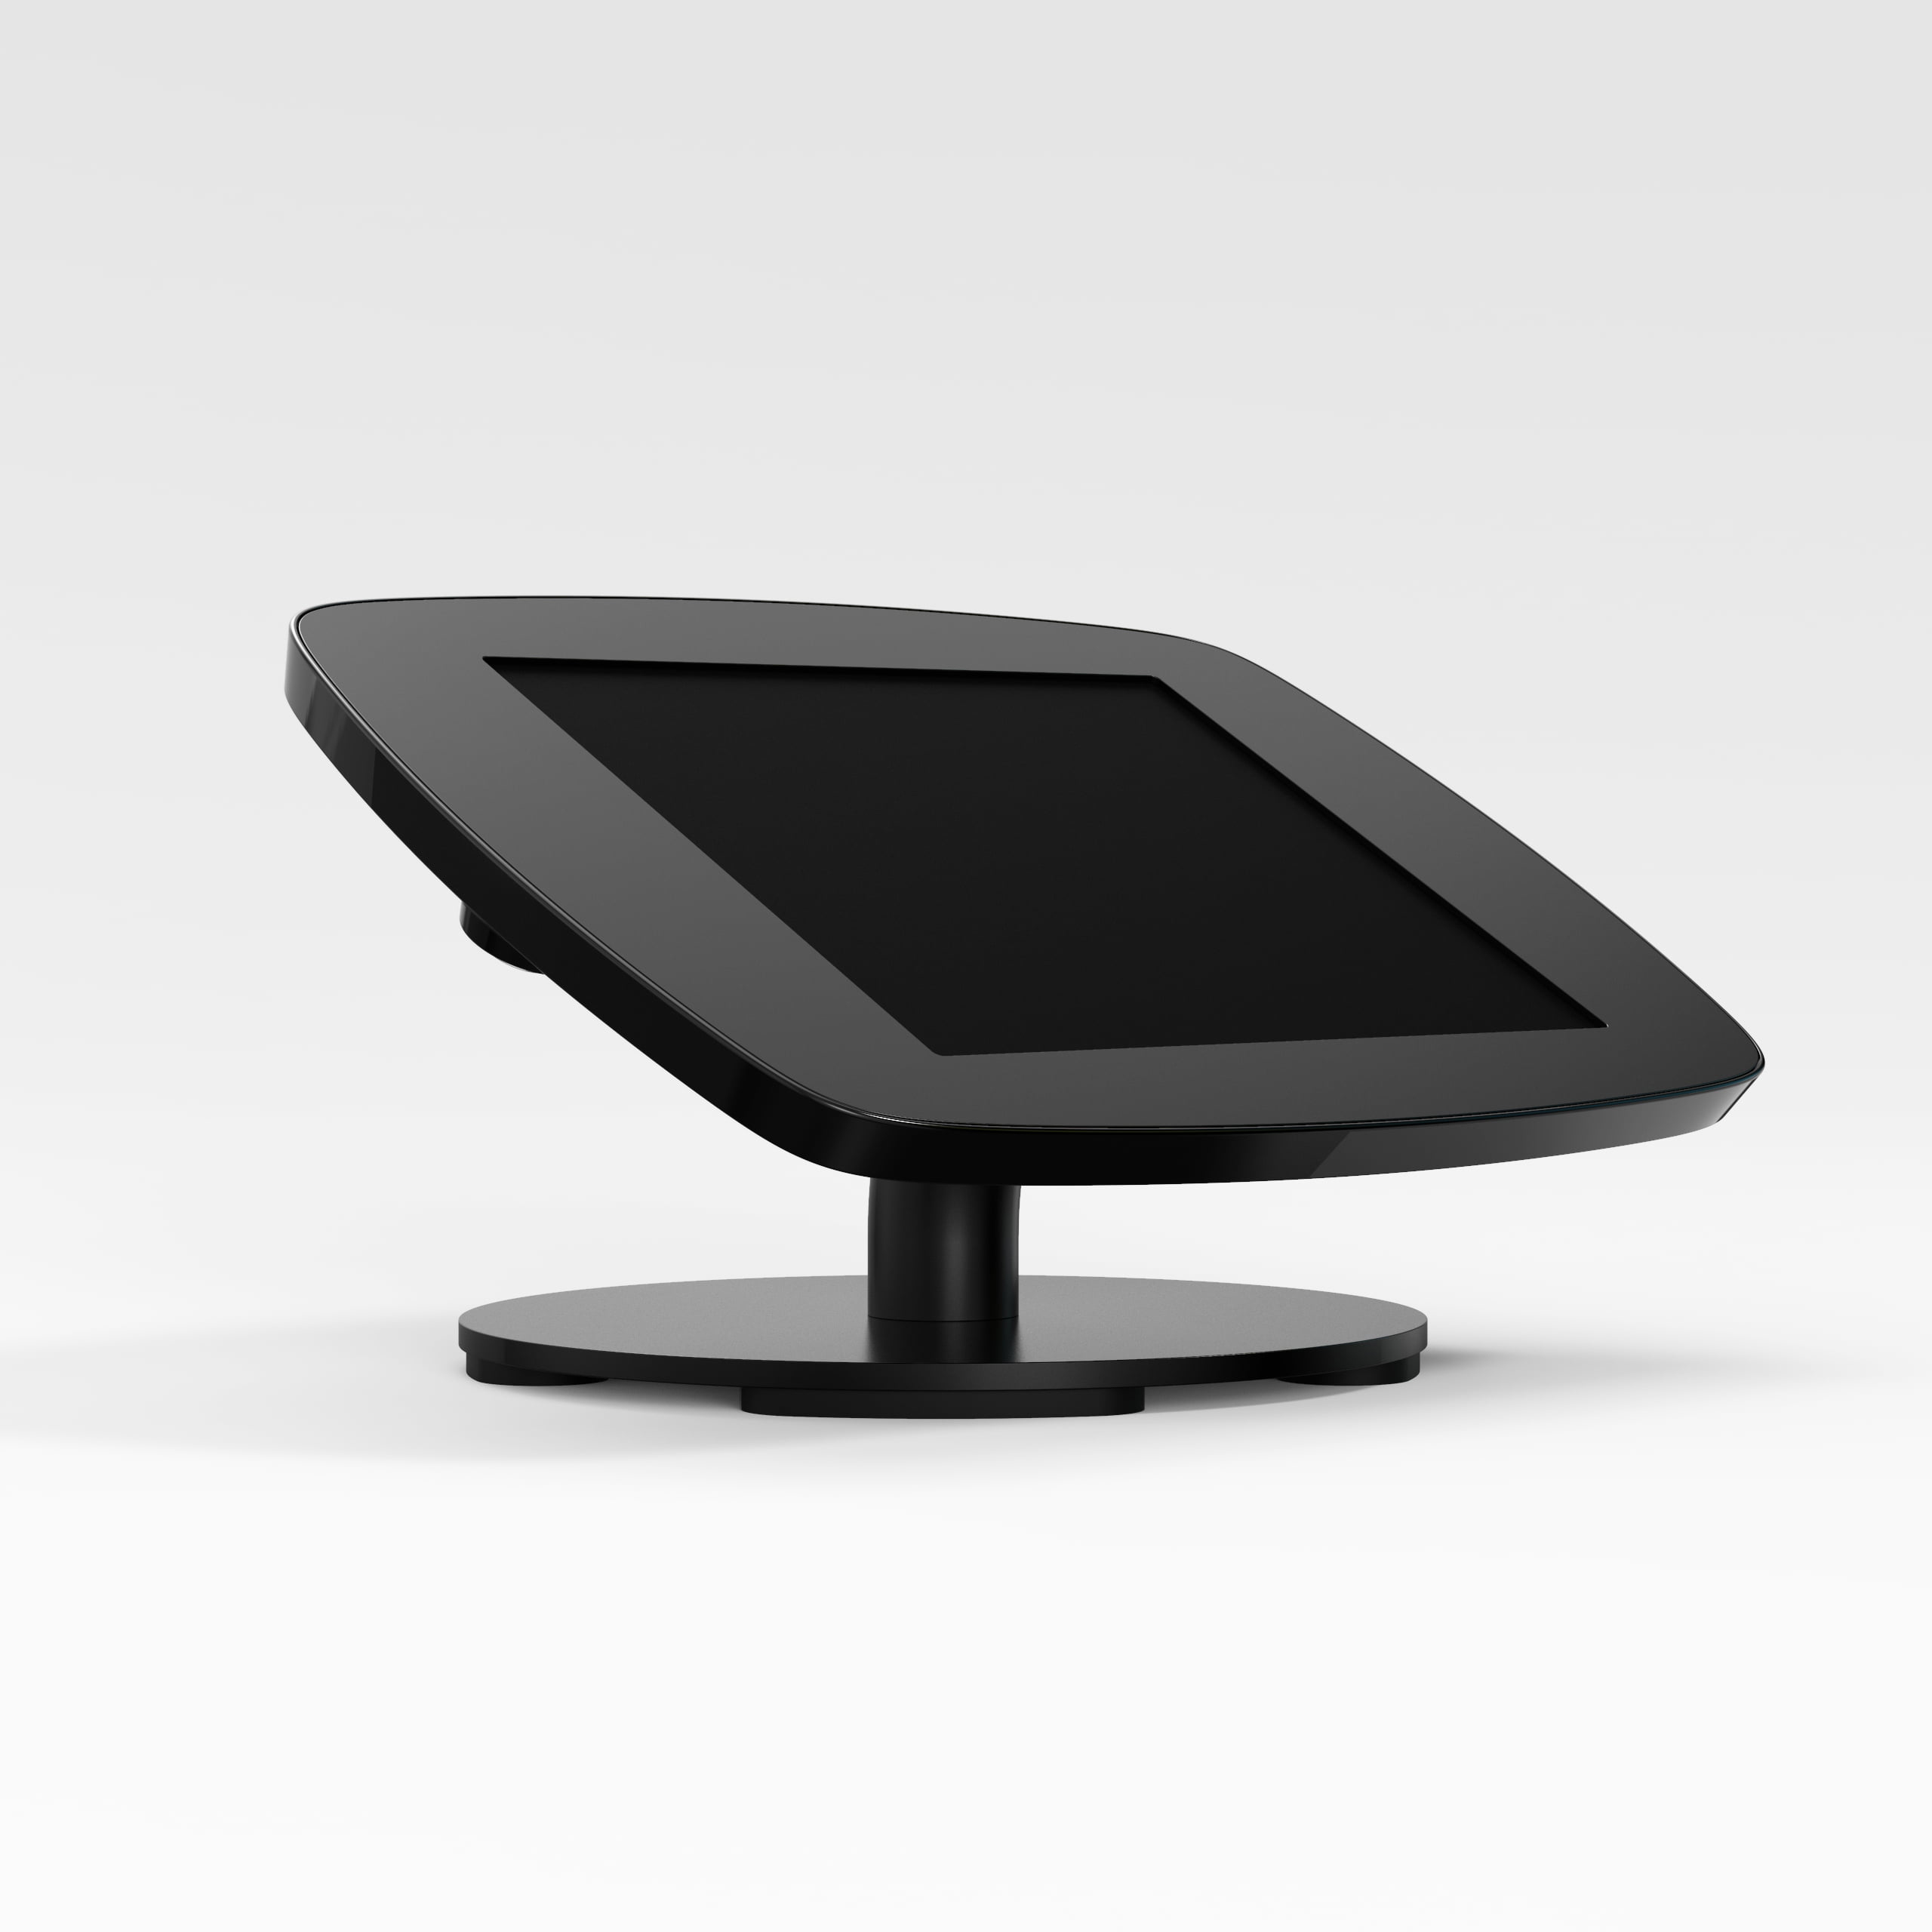 Bouncepad Counter supporto antifurto per tablet 25,4 cm [10] Nero (COUNTDBLKOPENCAM/OPENHOME SG)